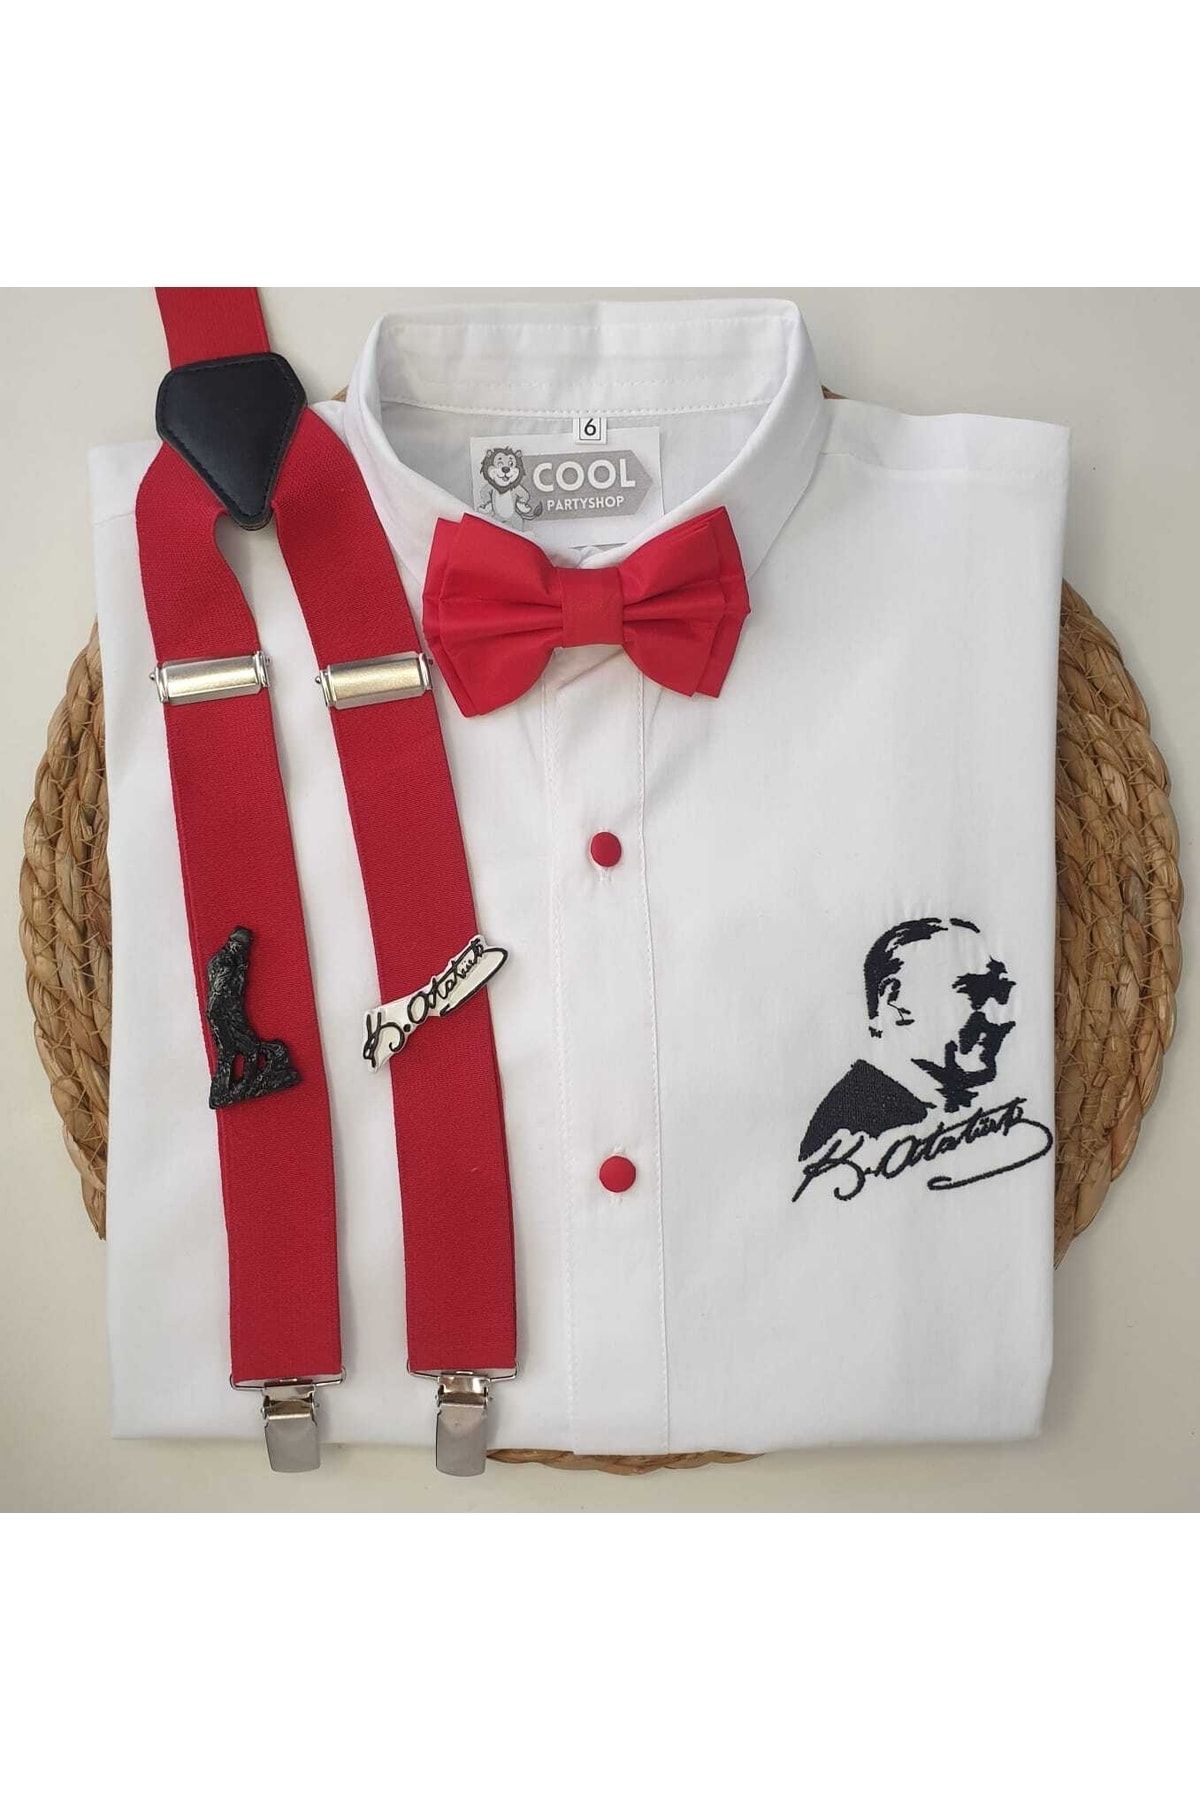 cool partyshop Atatürk Temalı Askı Papyon Gömlek